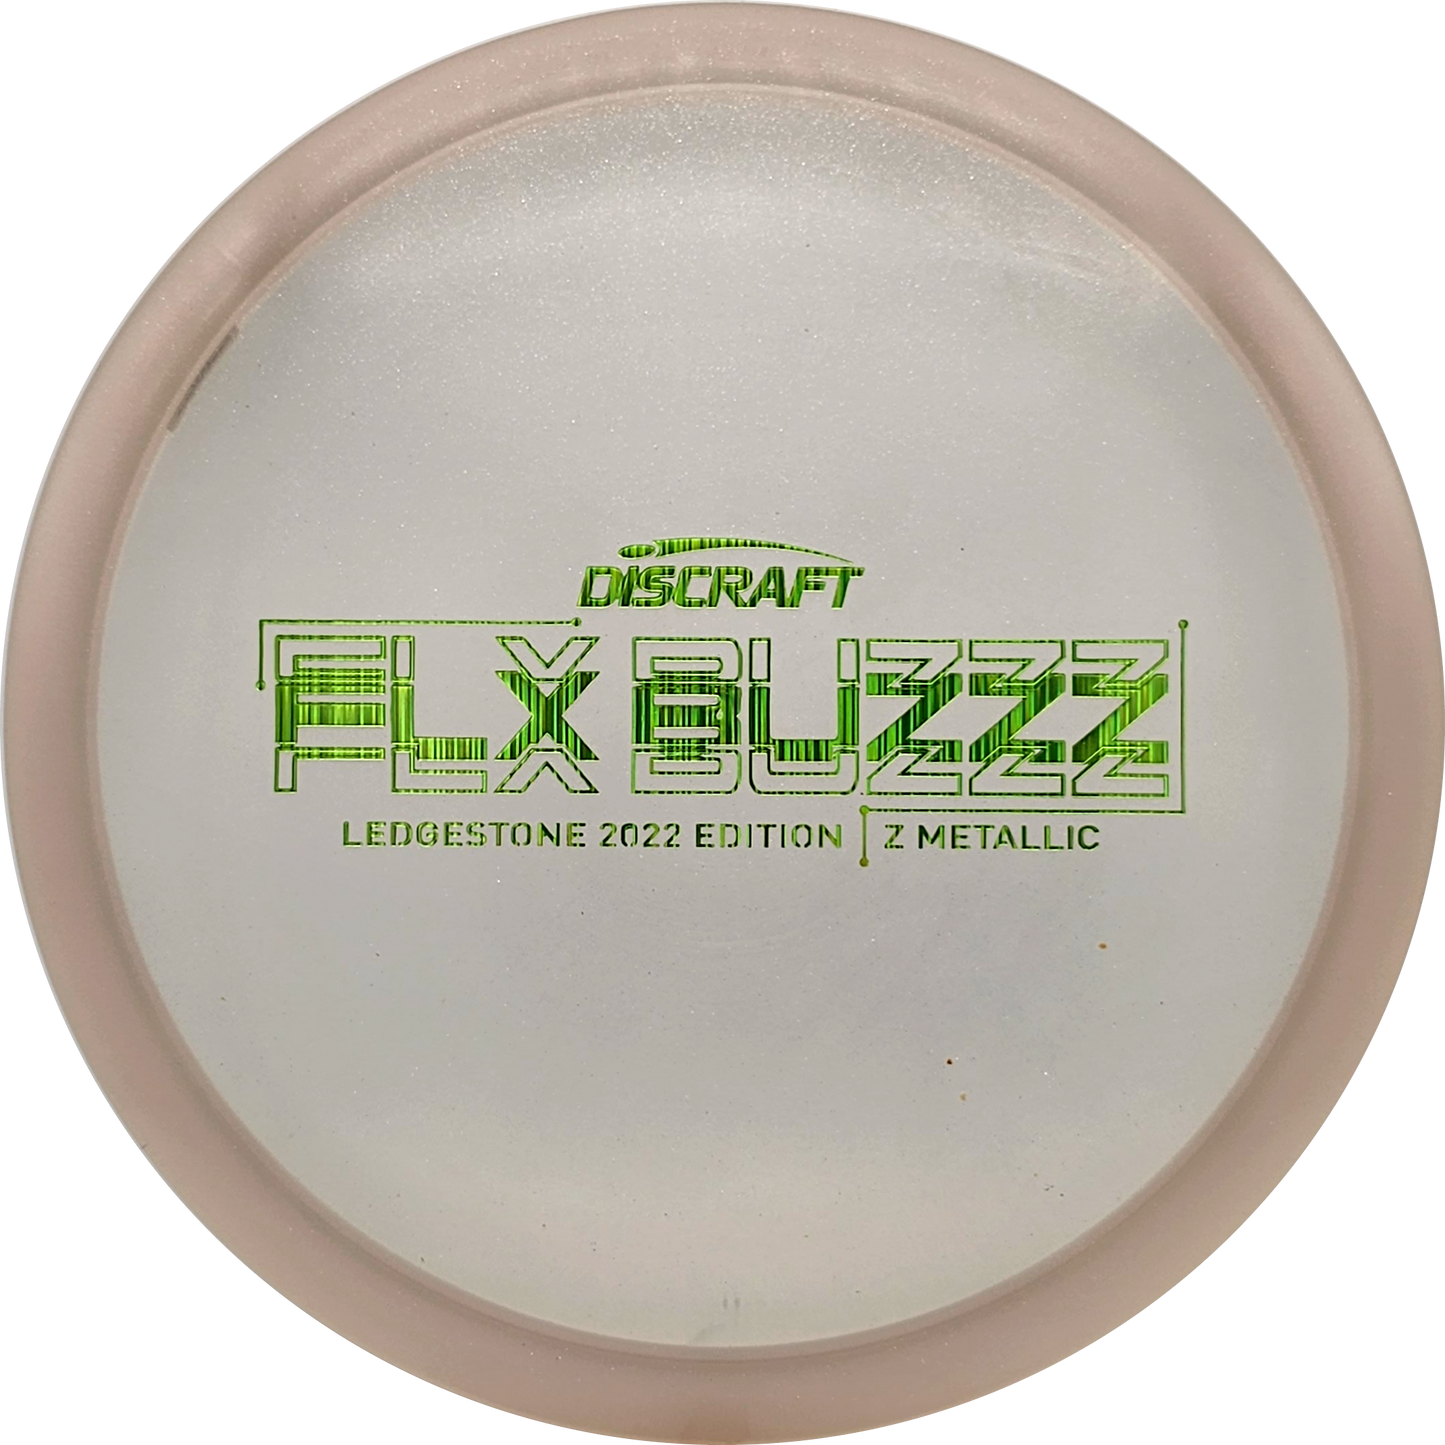 Discraft FLX Z Metallic Buzzz - Ledgestone 2022